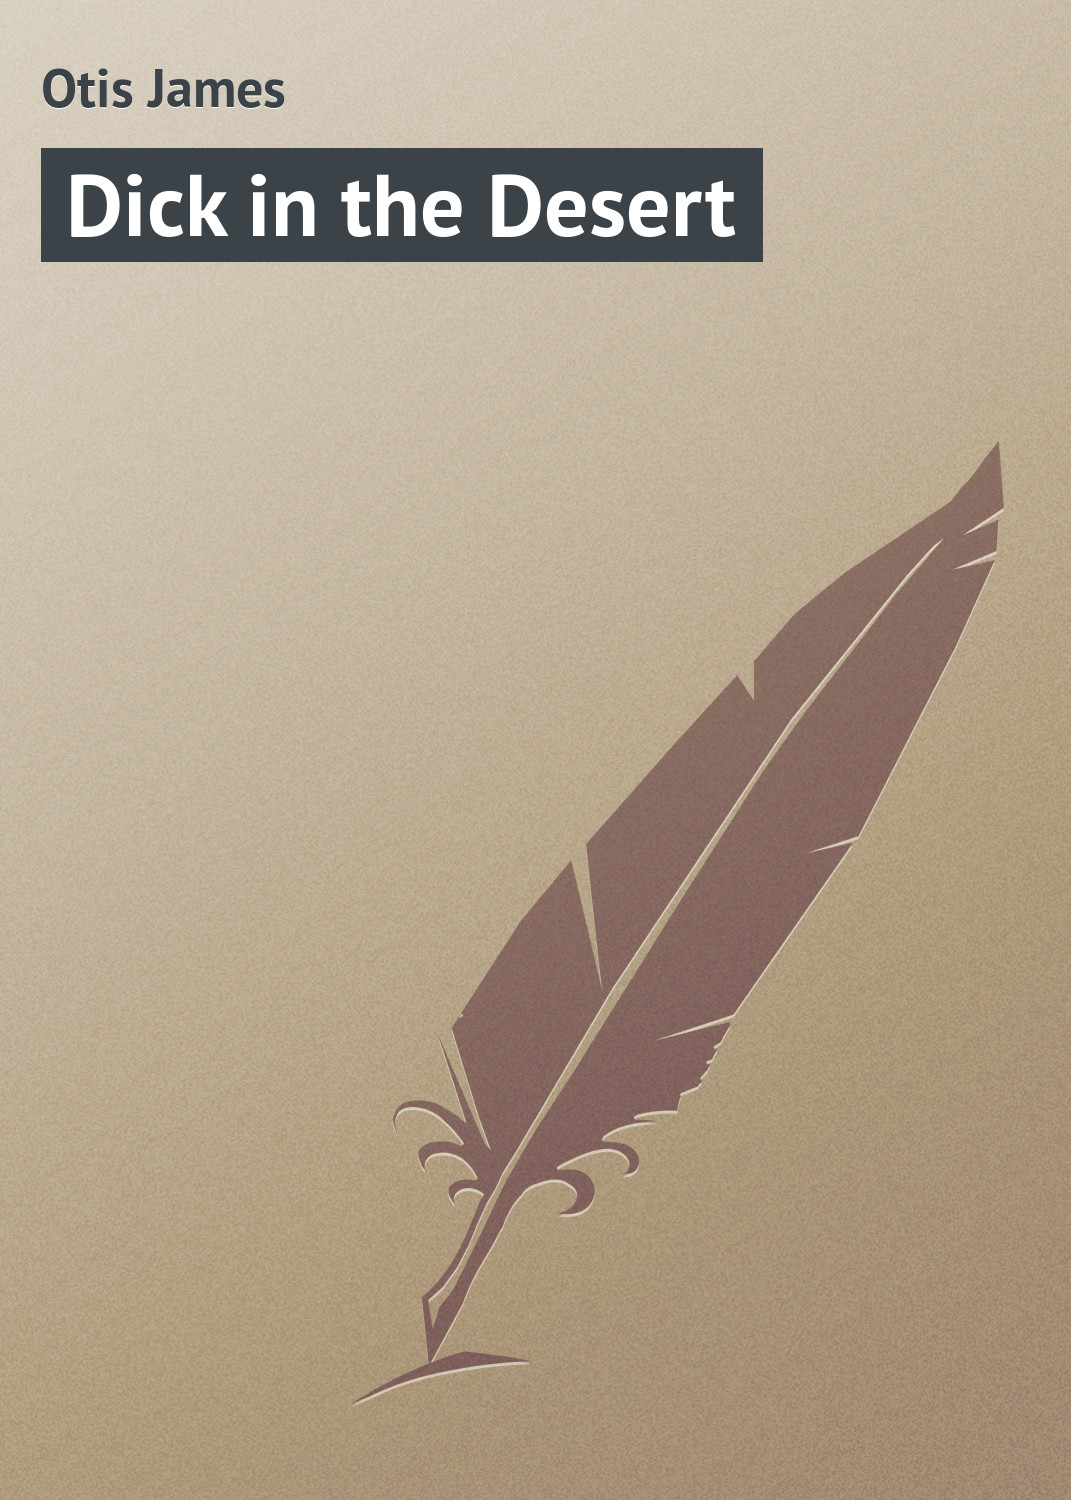 Книга Dick in the Desert из серии , созданная James Otis, может относится к жанру Природа и животные, Зарубежная классика, Зарубежные детские книги. Стоимость электронной книги Dick in the Desert с идентификатором 23165483 составляет 5.99 руб.